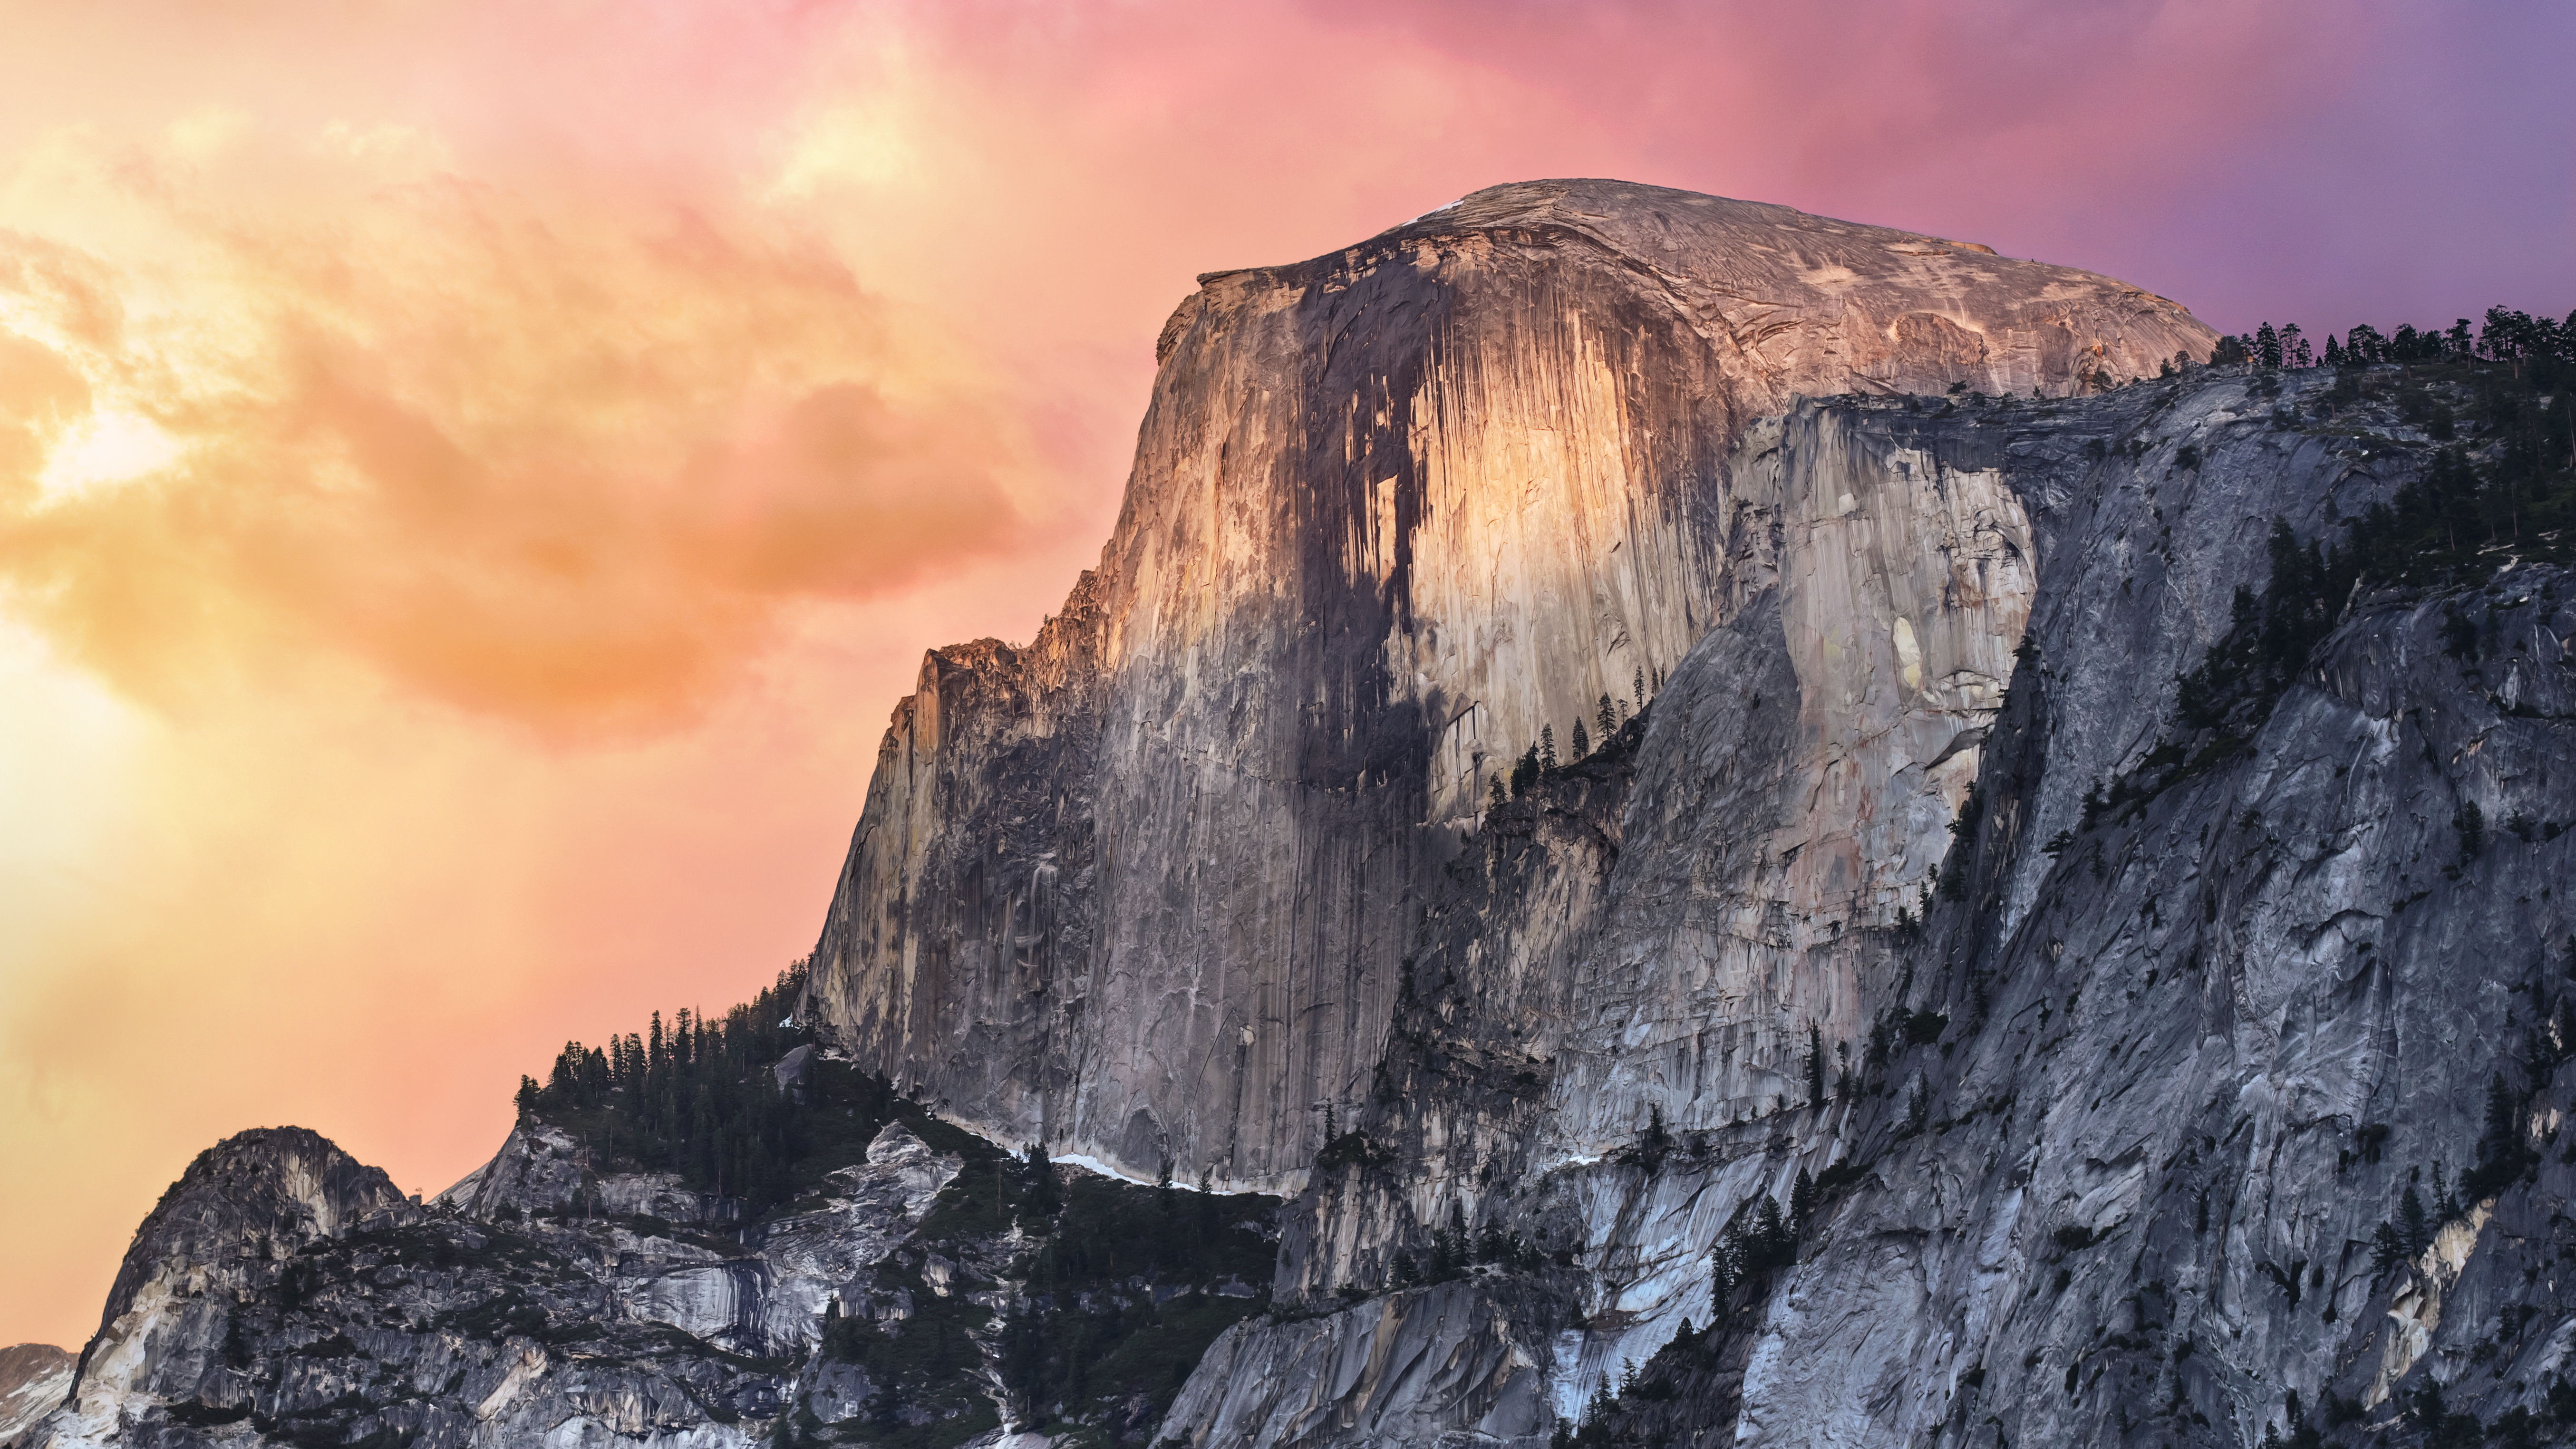 Mac Os X Yosemite 10.11 Download